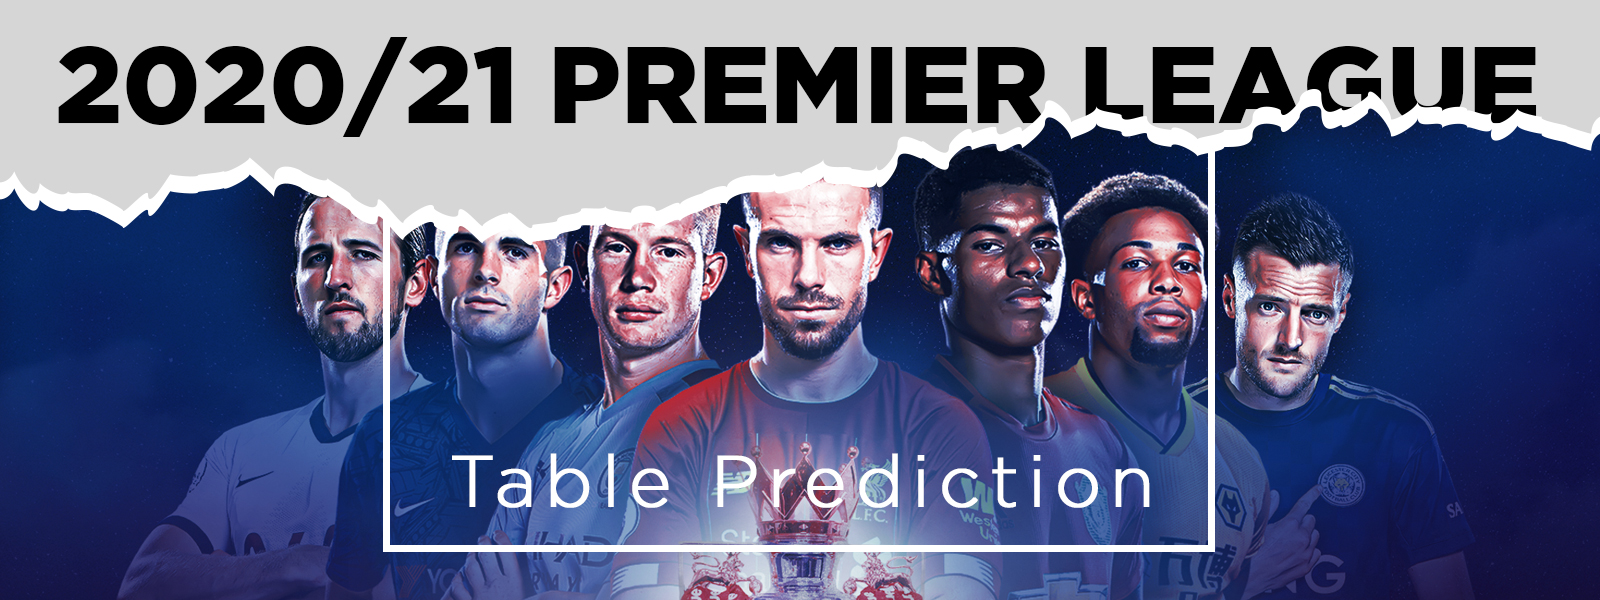 2020/21 Premier League Table Prediction